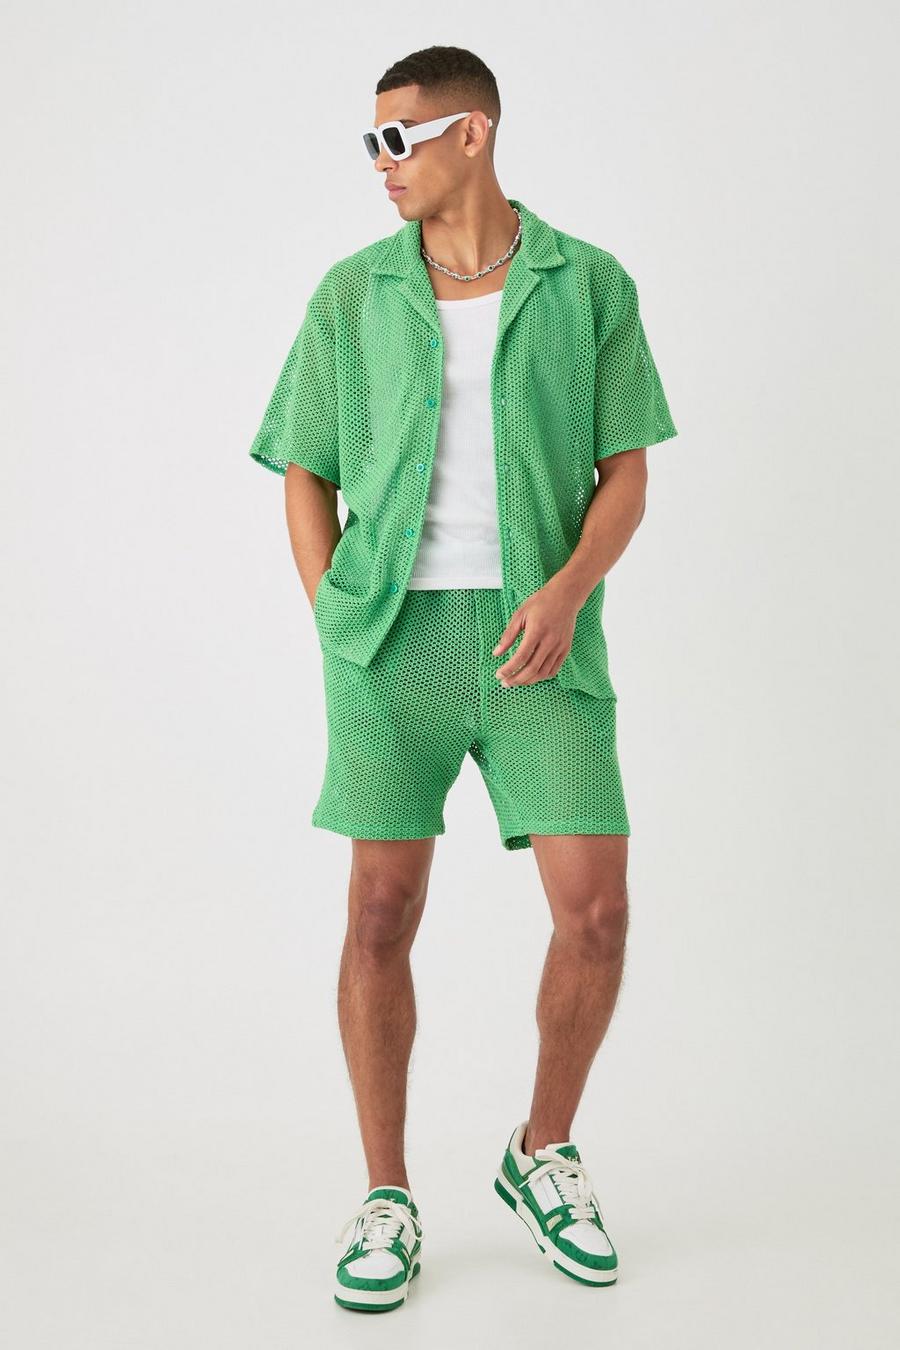 Green Boxy Overhemd Met Open Stiksels En Shorts